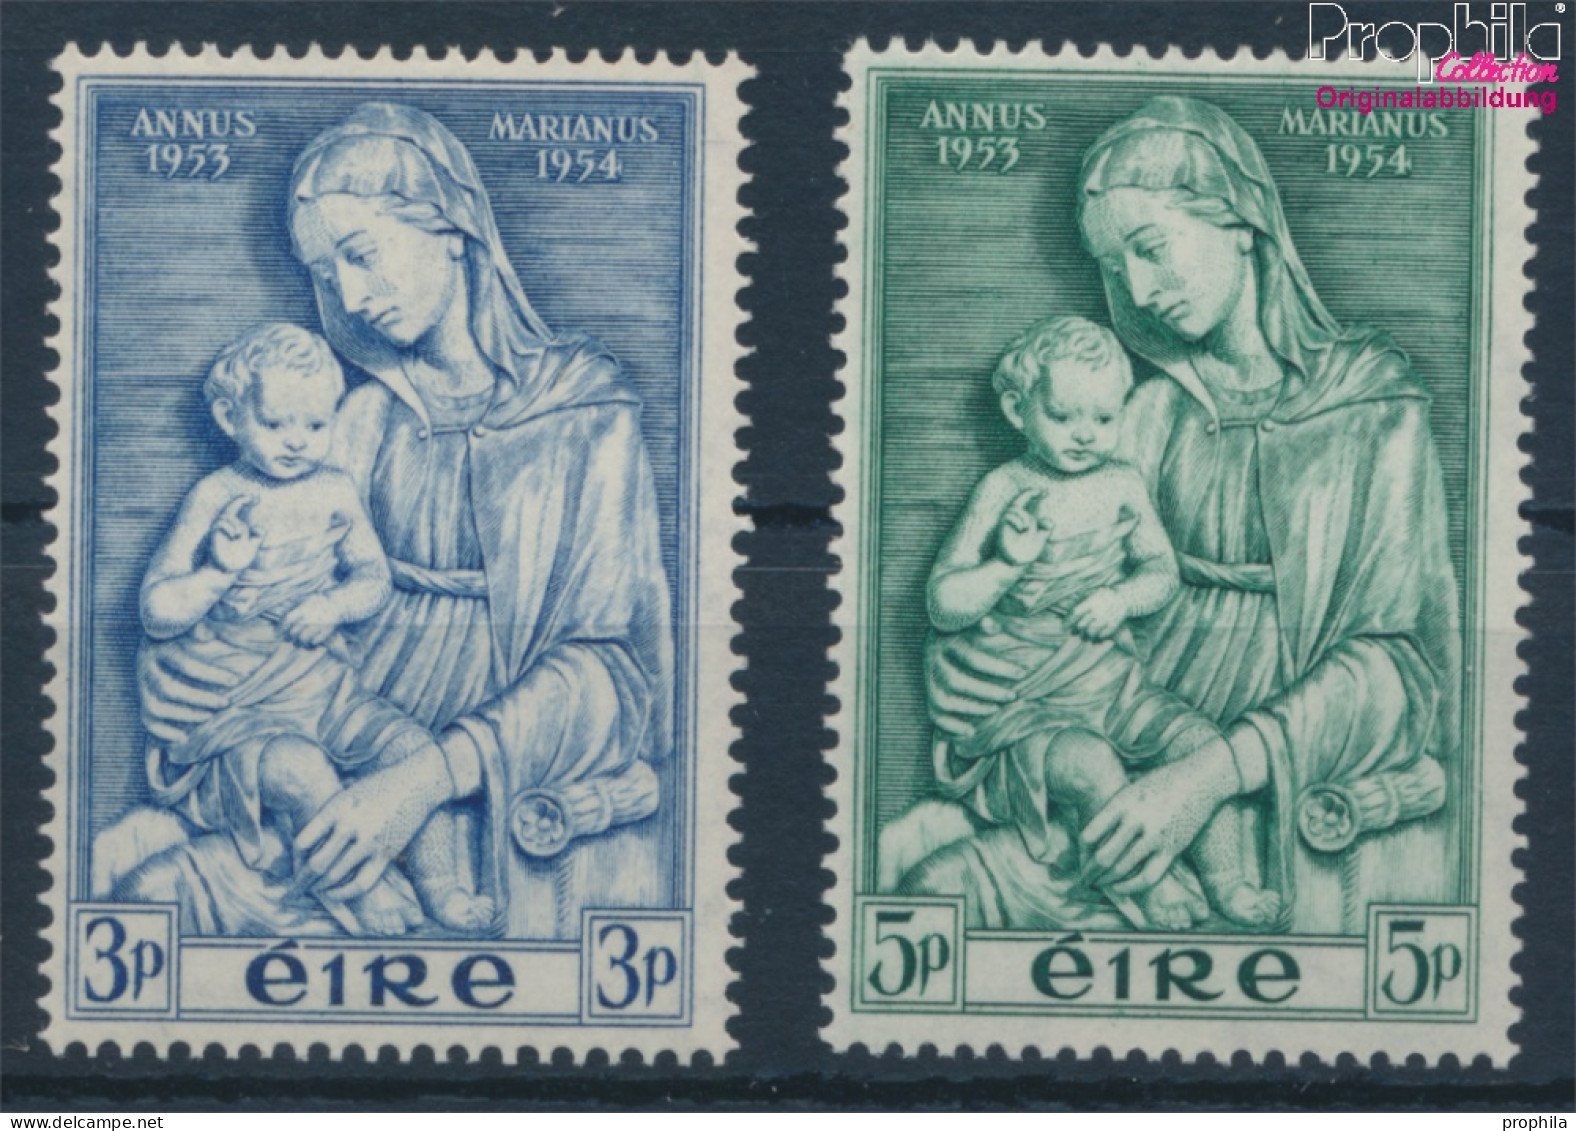 Irland 120-121 (kompl.Ausg.) Postfrisch 1954 Marianisches Jahr (10398343 - Unused Stamps